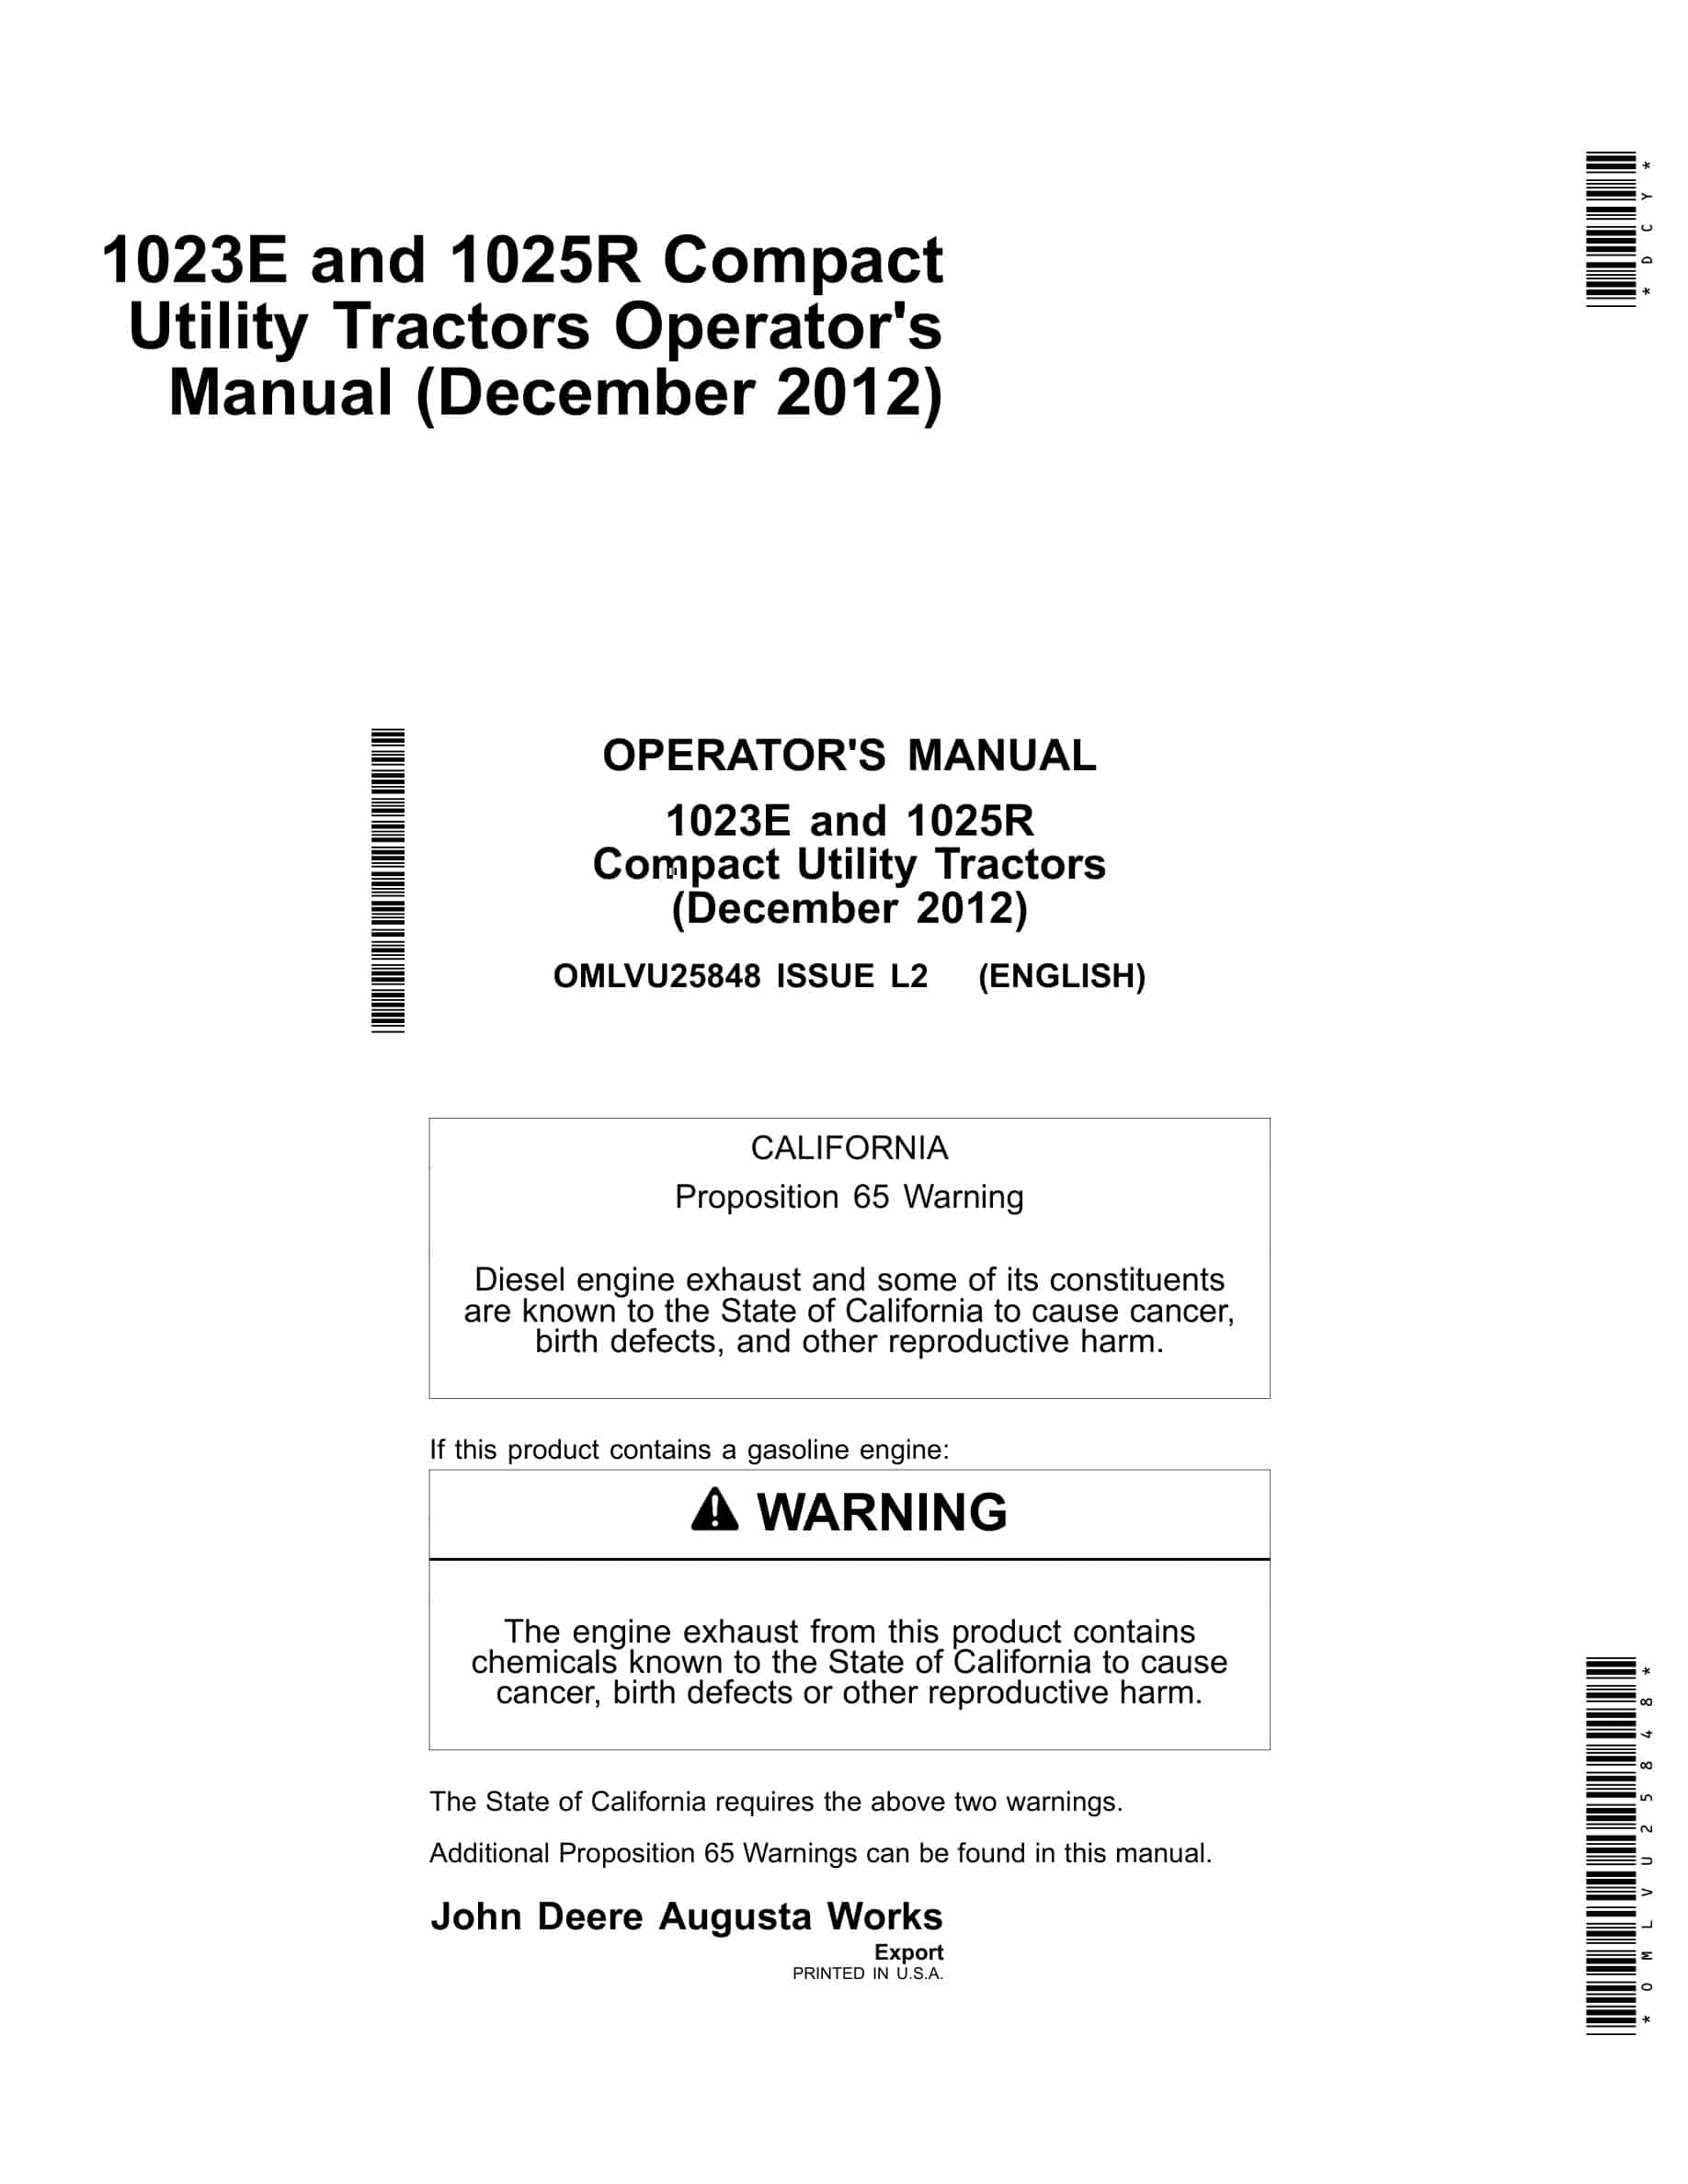 John Deere 1023e And 1025r Compact Utility Tractors Operator Manuals OMLVU25848-1